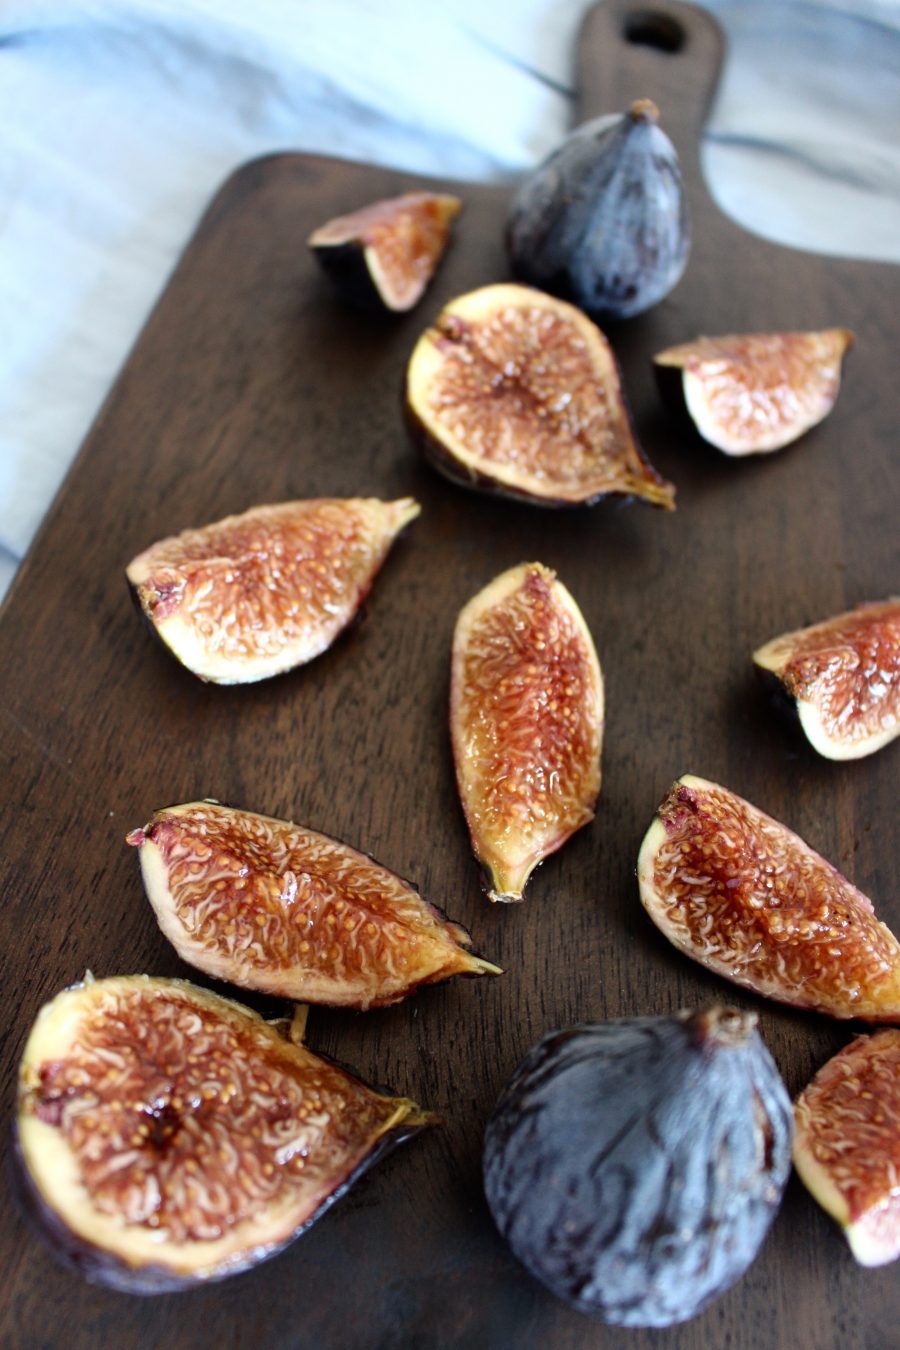 warm Porridge with caramelized figs